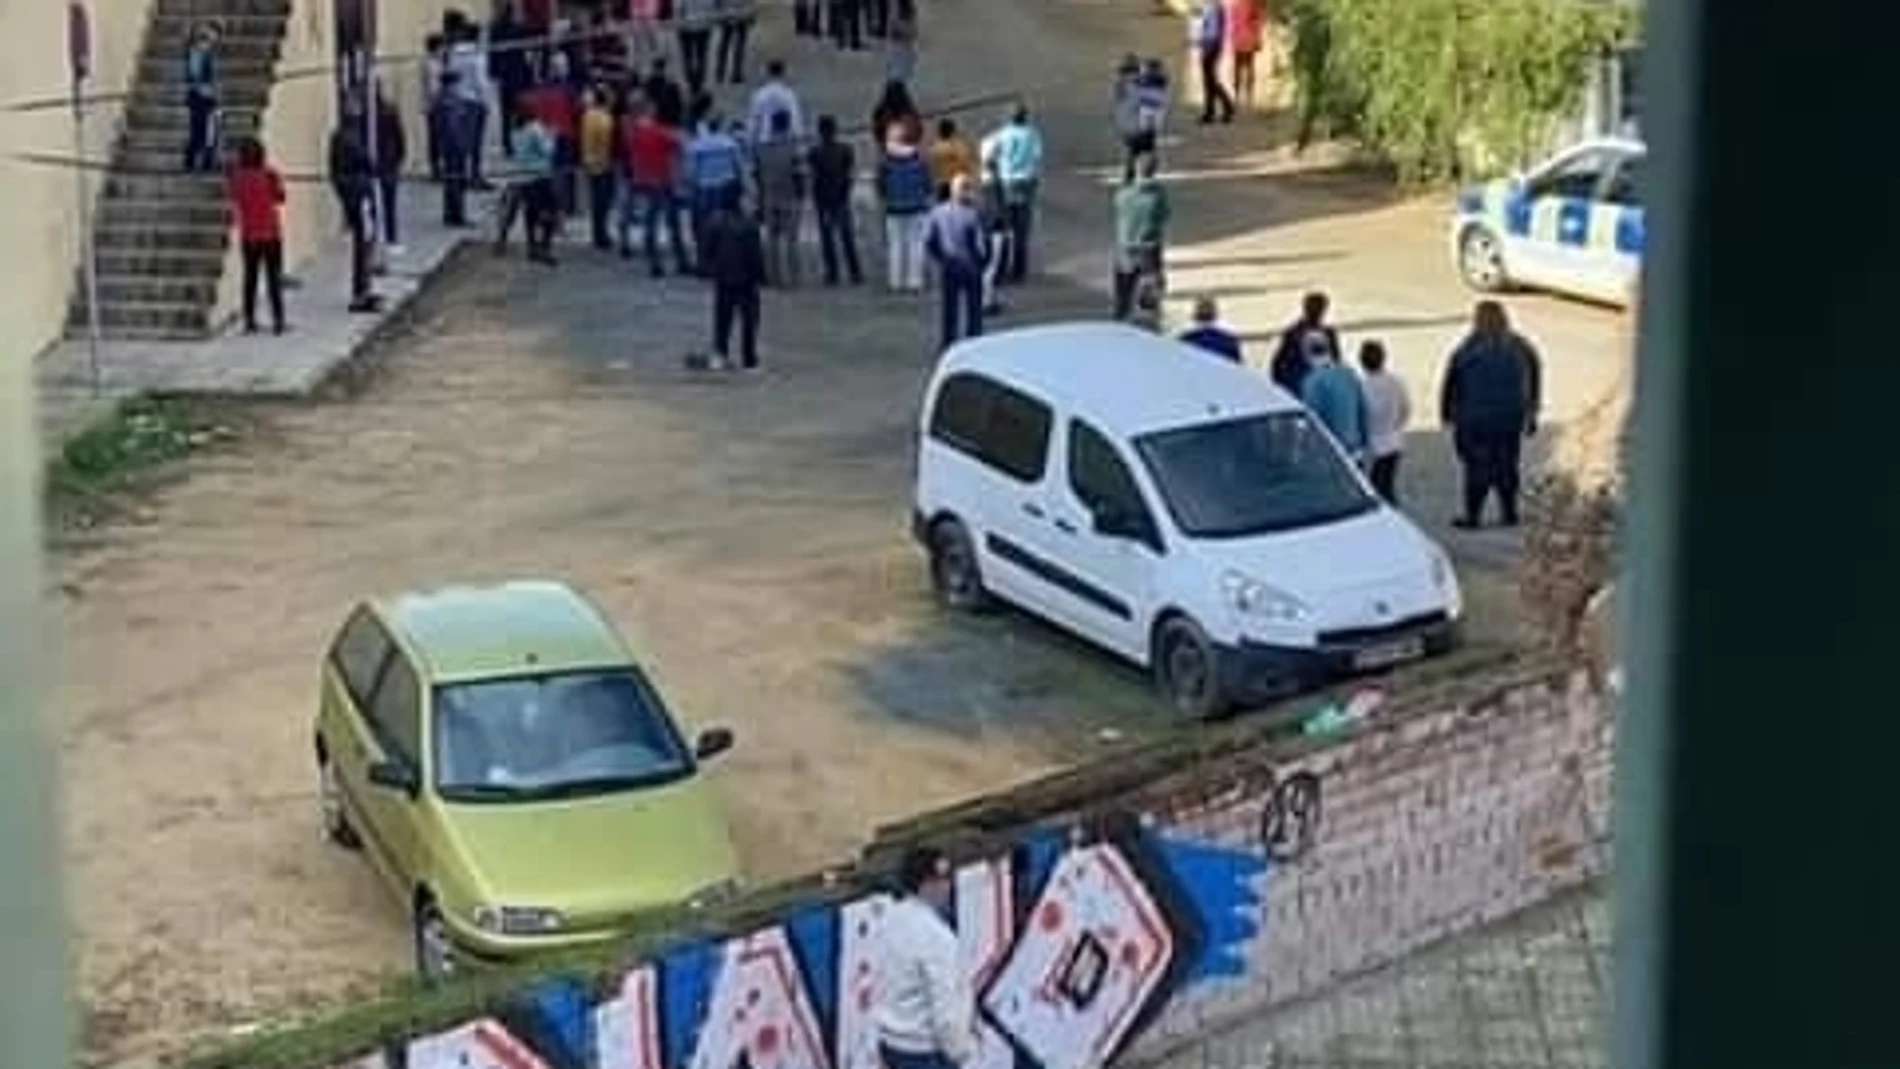 Dispositivos de emergencias acudieron al lugar del crimen, en la barriada de San Jerónimo de Sevilla12/25/2019